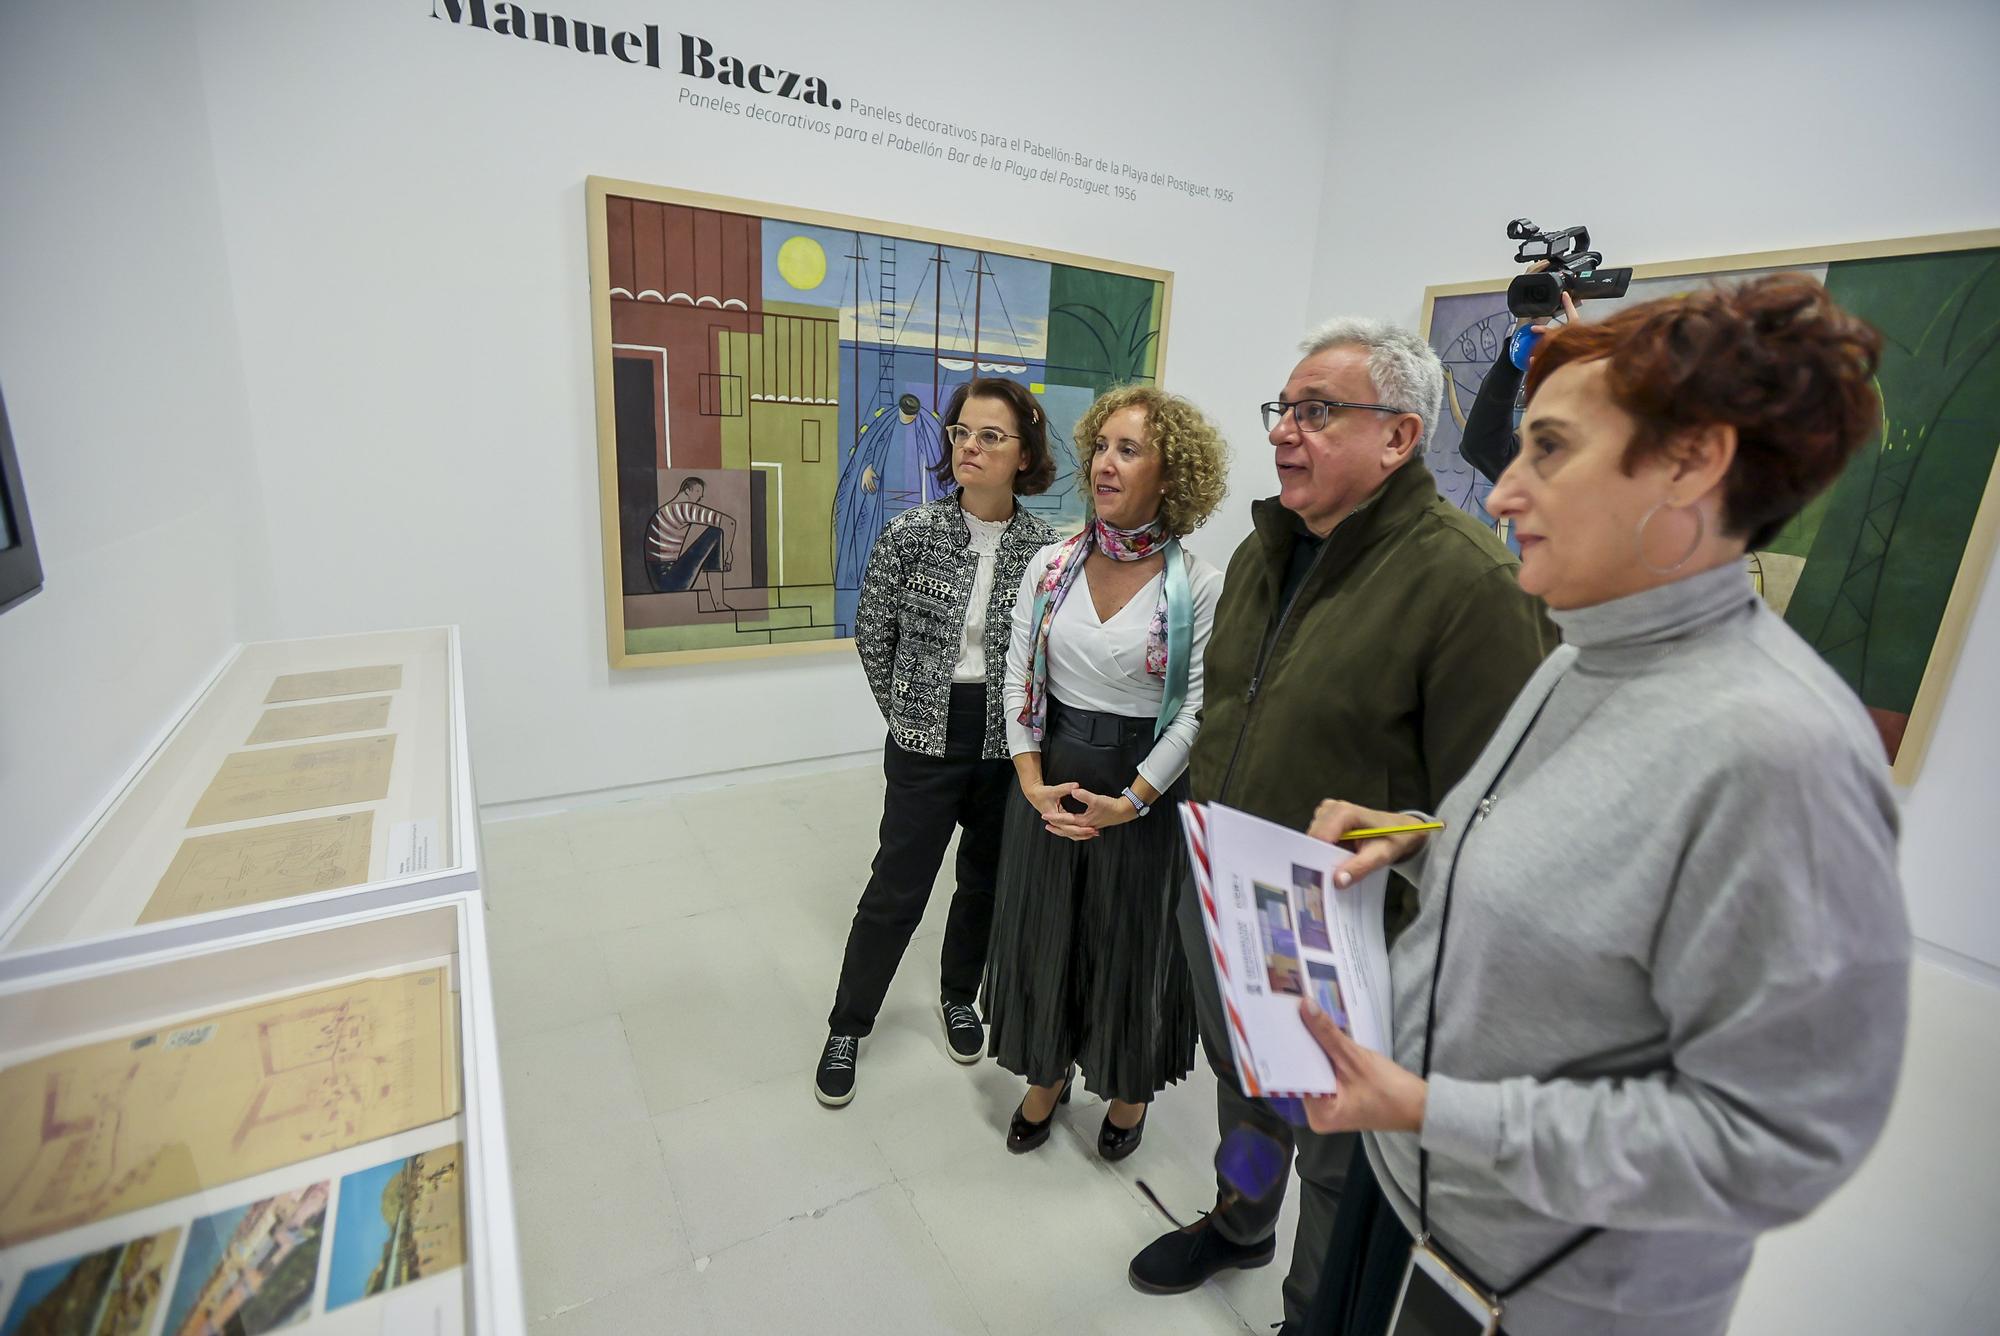 Tres murales de Manuel Baeza restaurados vuelven a Alicante